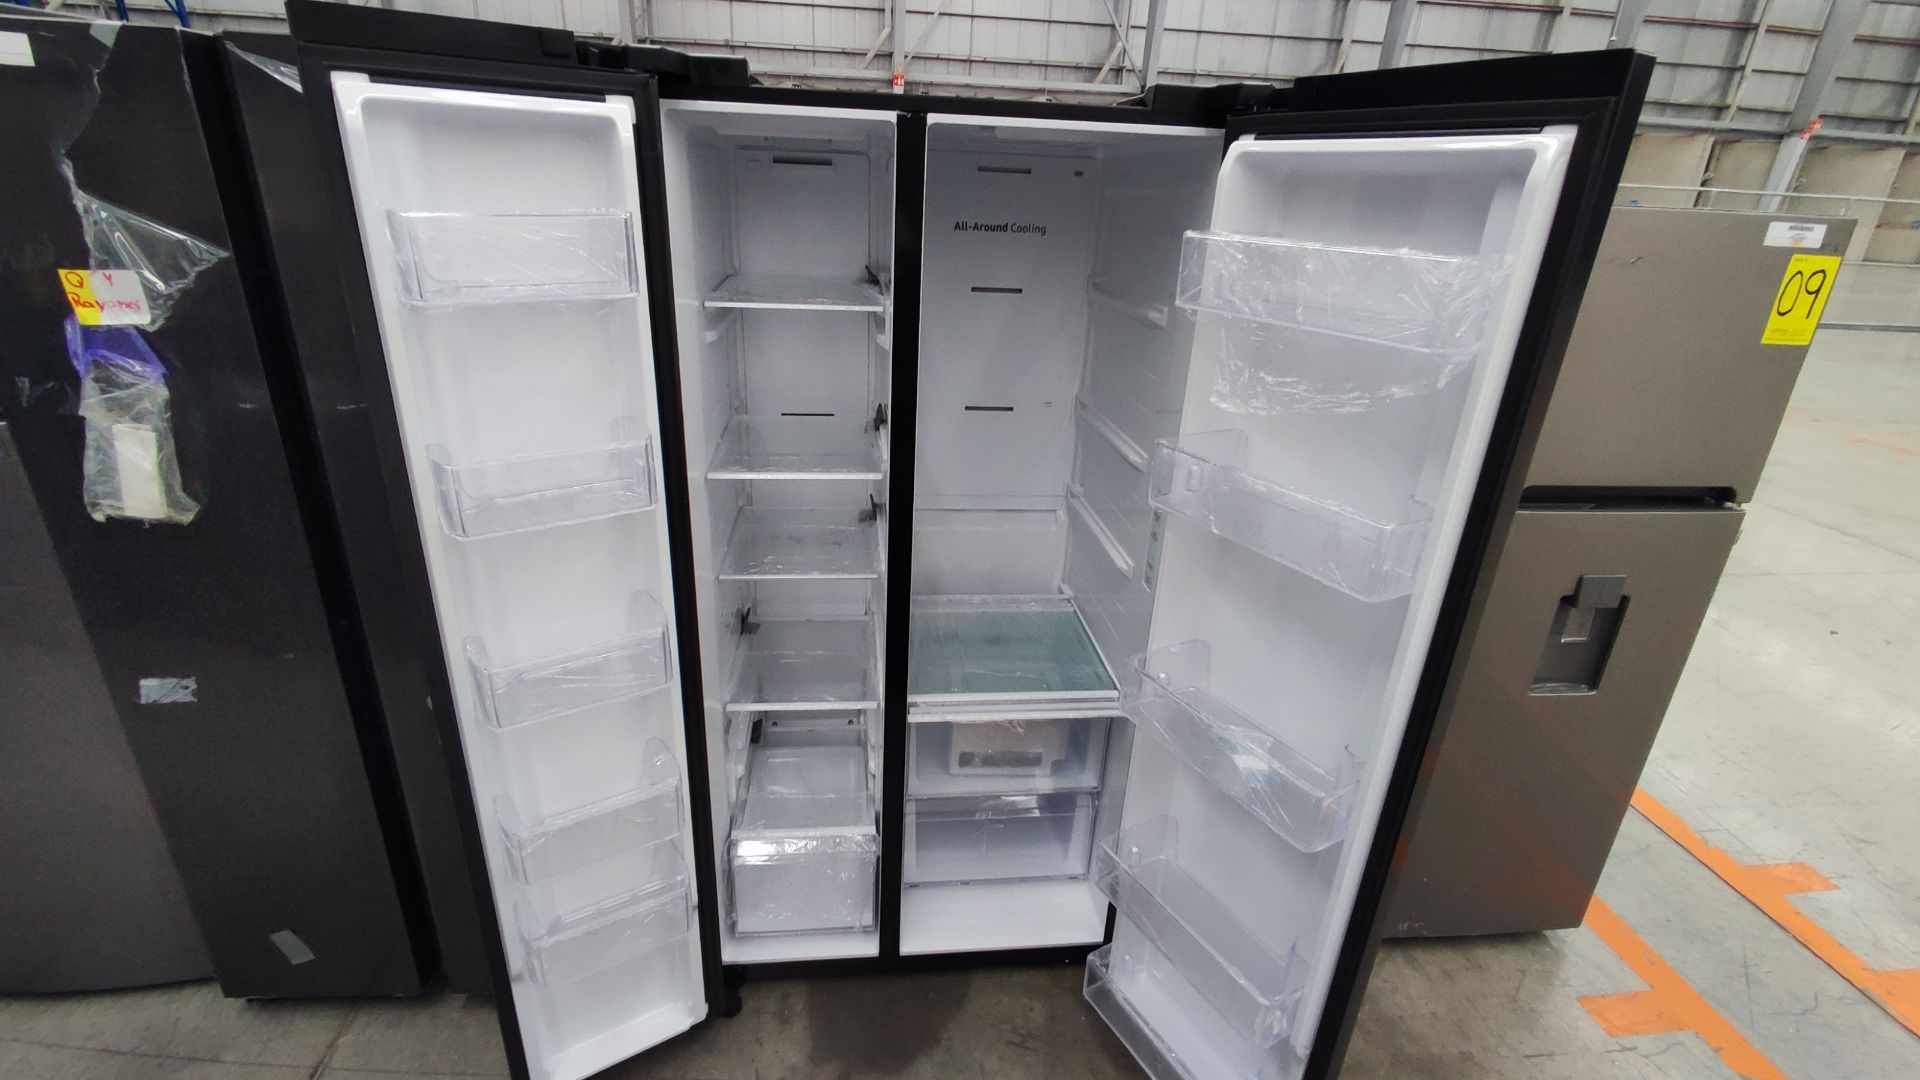 1 Refrigerador Marca Samsung, Modelo RS28T5B00B1, Serie 0B2V4BBT600402M, Color Gris, Detalles Estét - Image 4 of 9